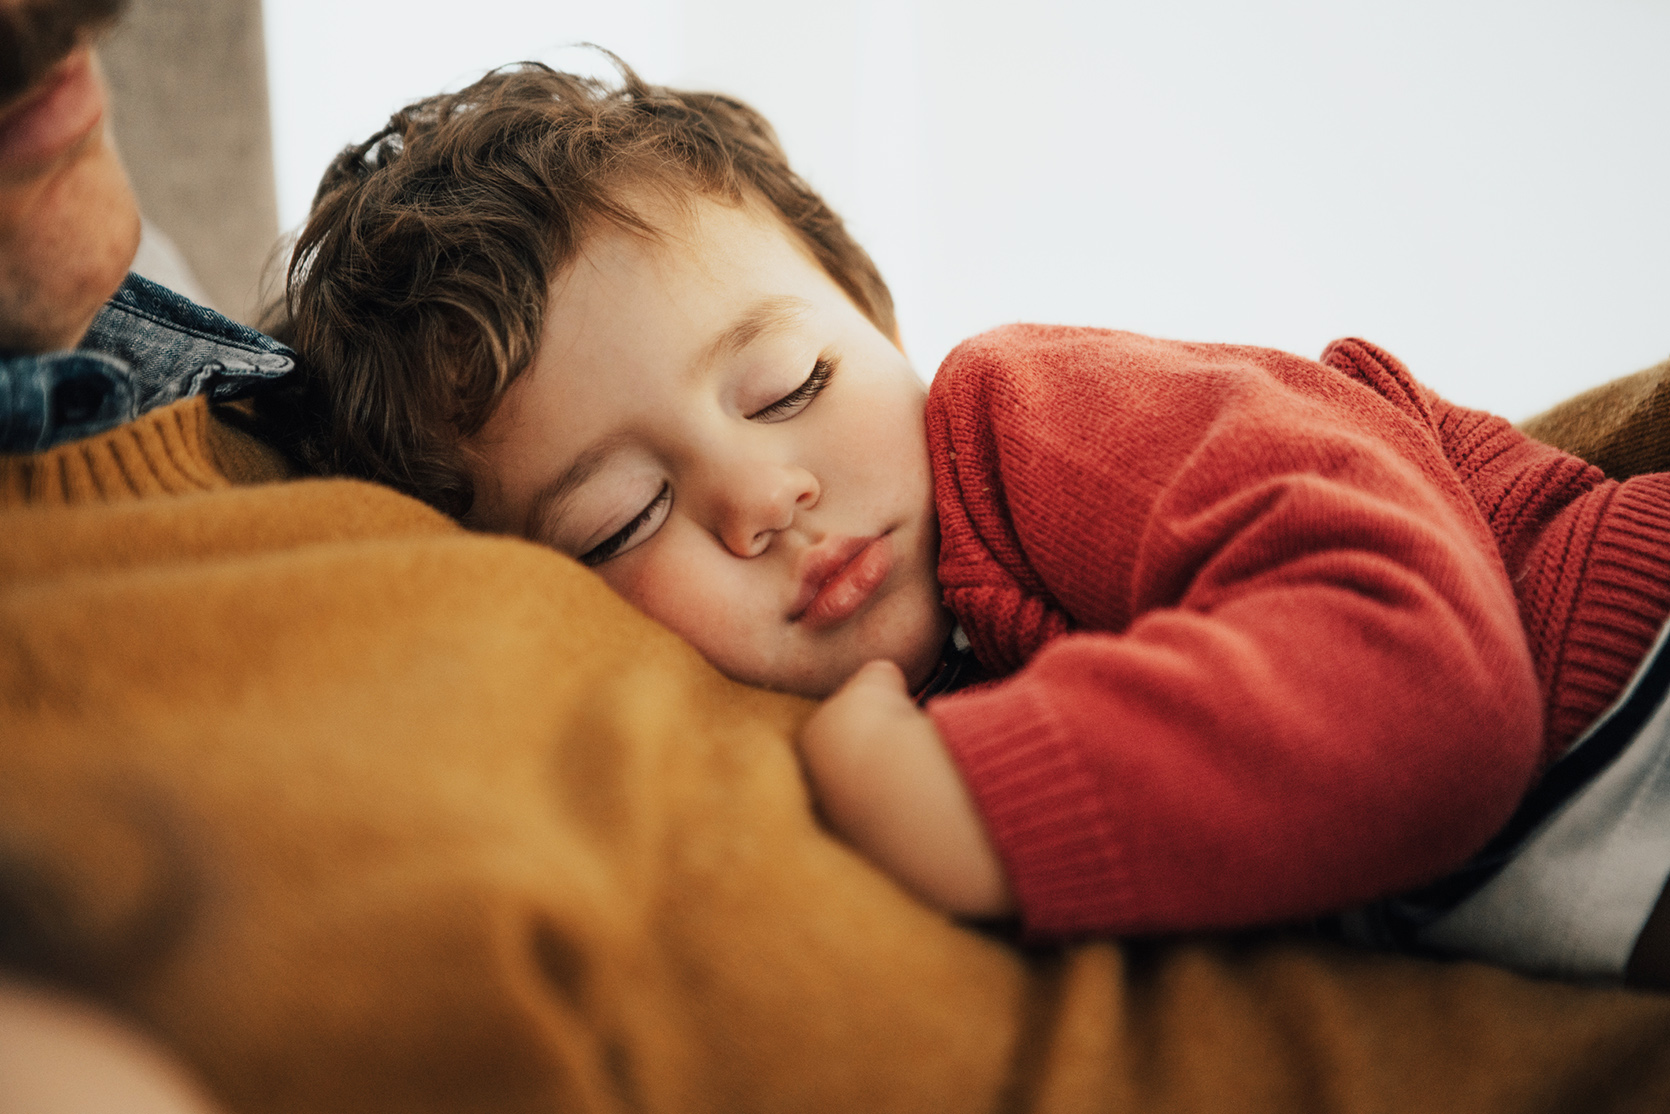 Trudne pytania – jak oduczyć dziecko spania z rodzicami?